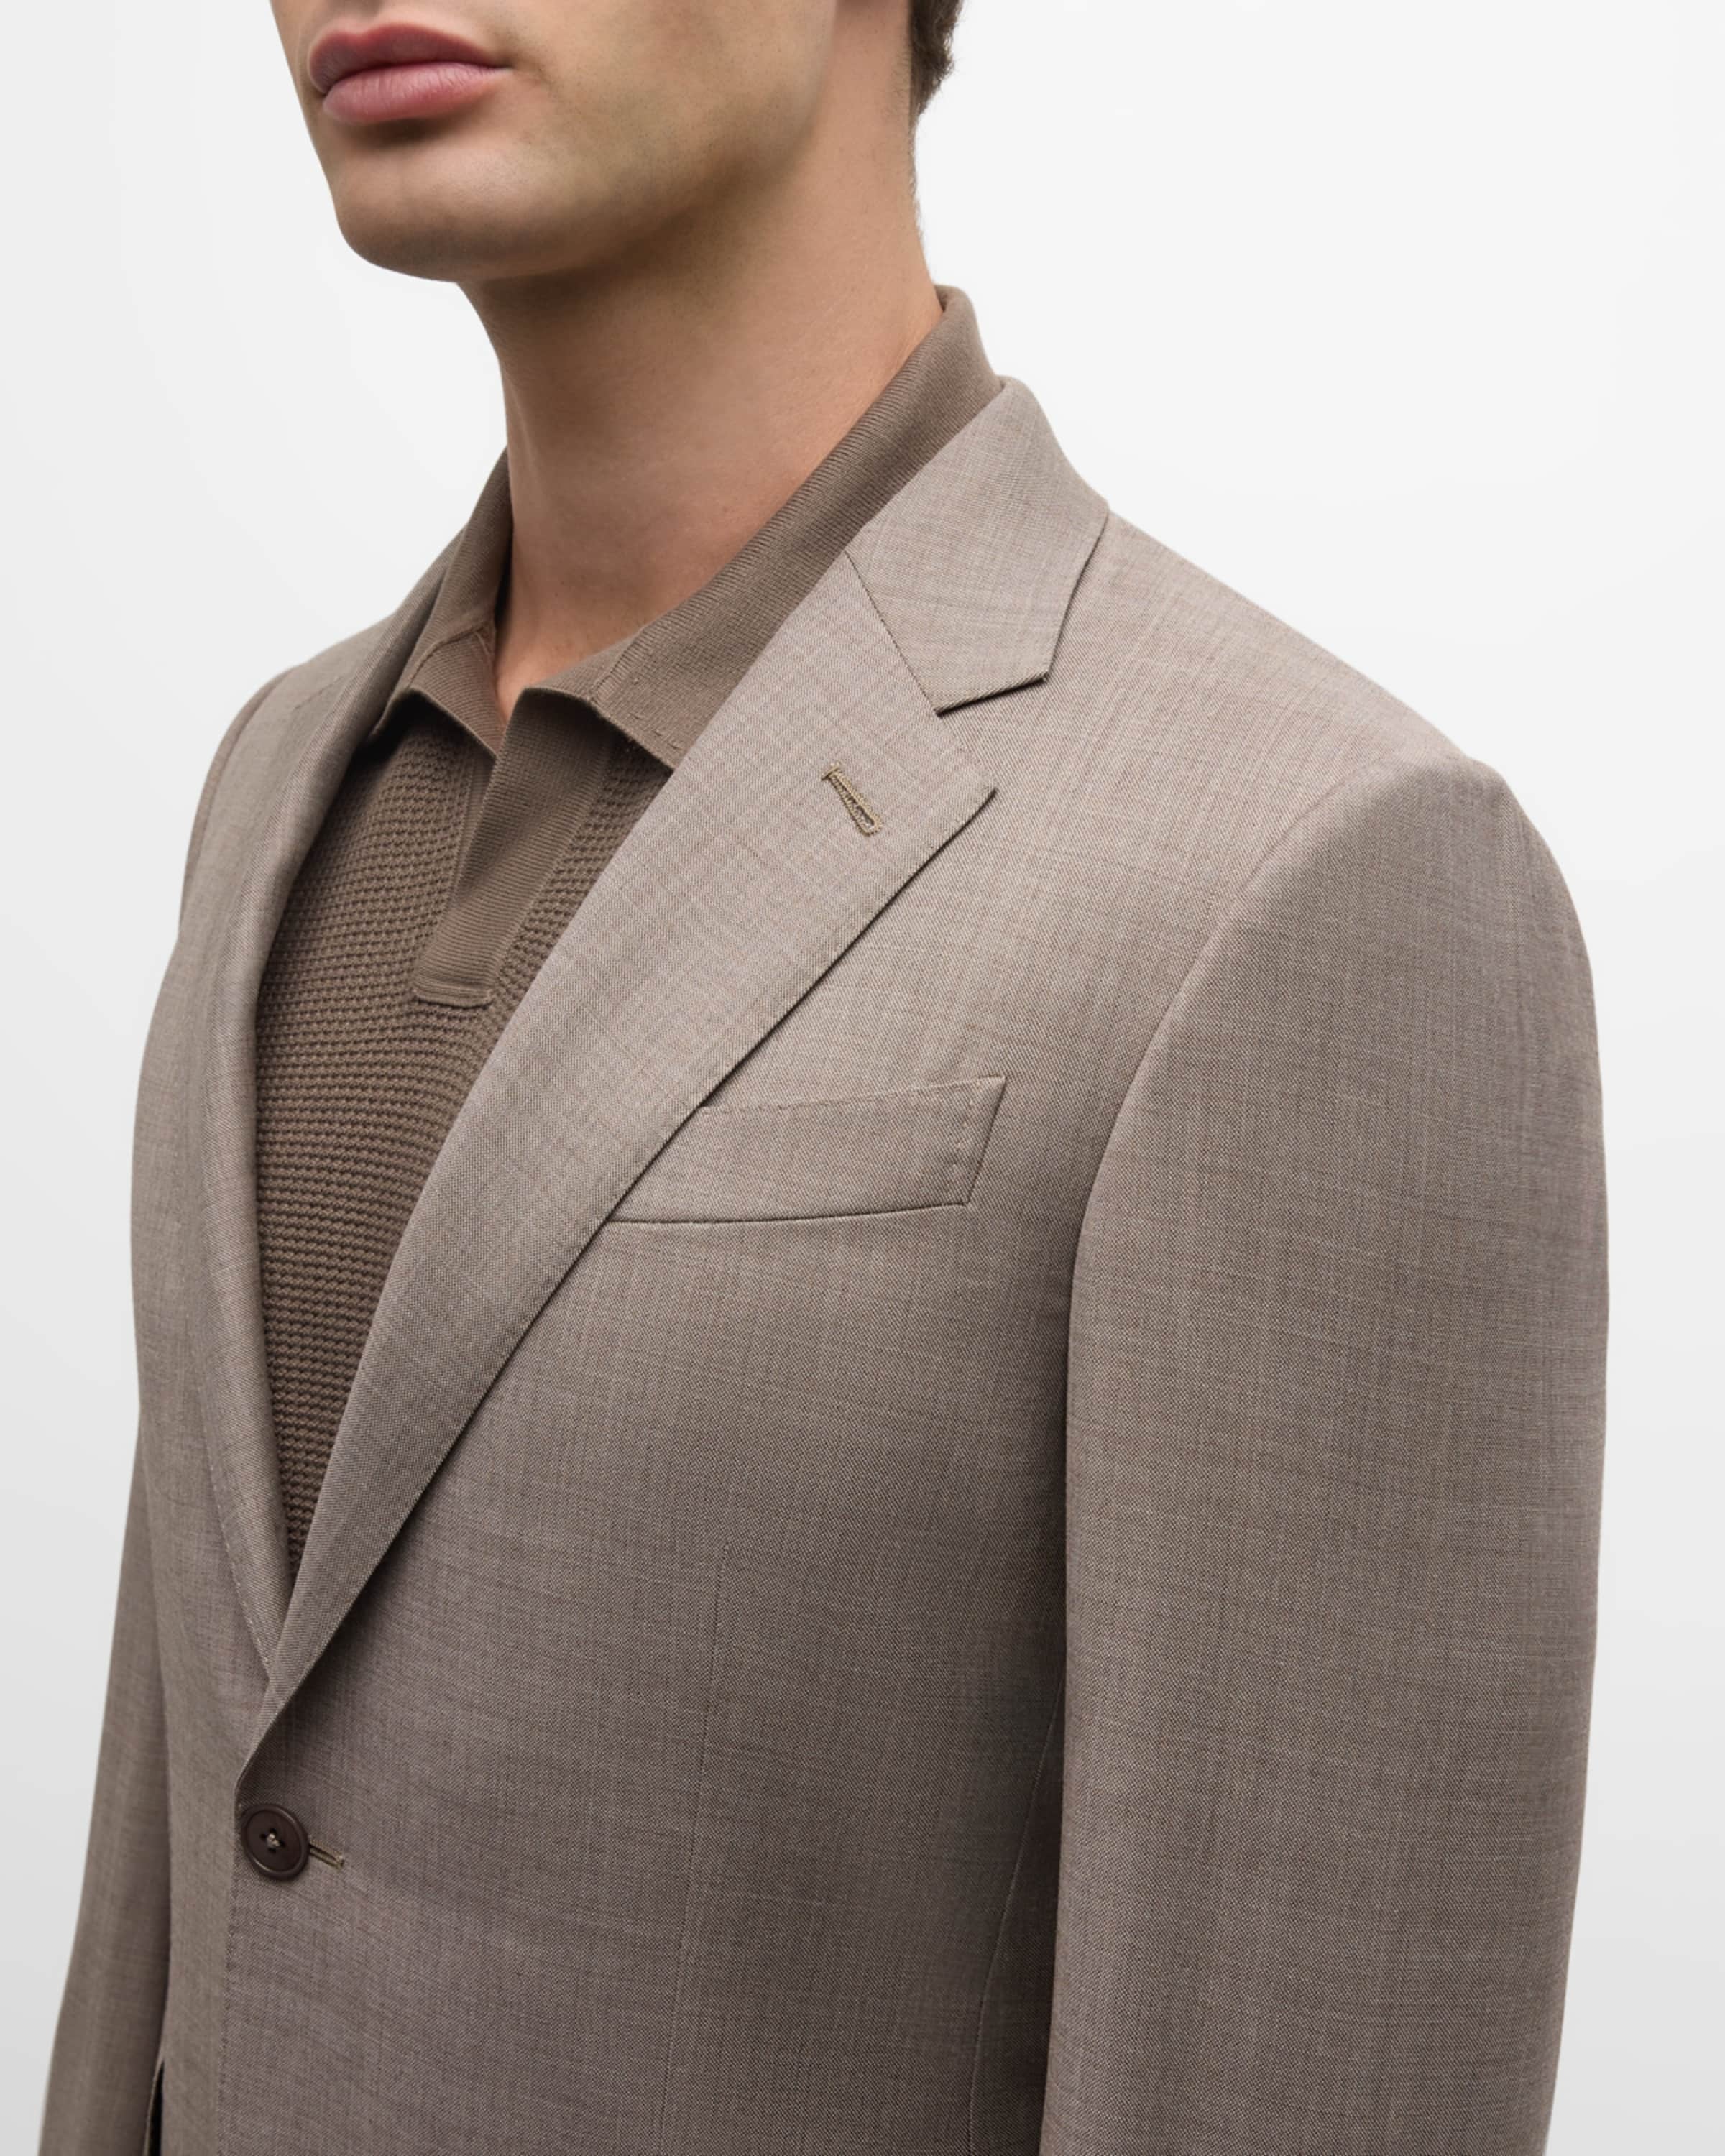 Men's Wool Sharkskin Suit - 1